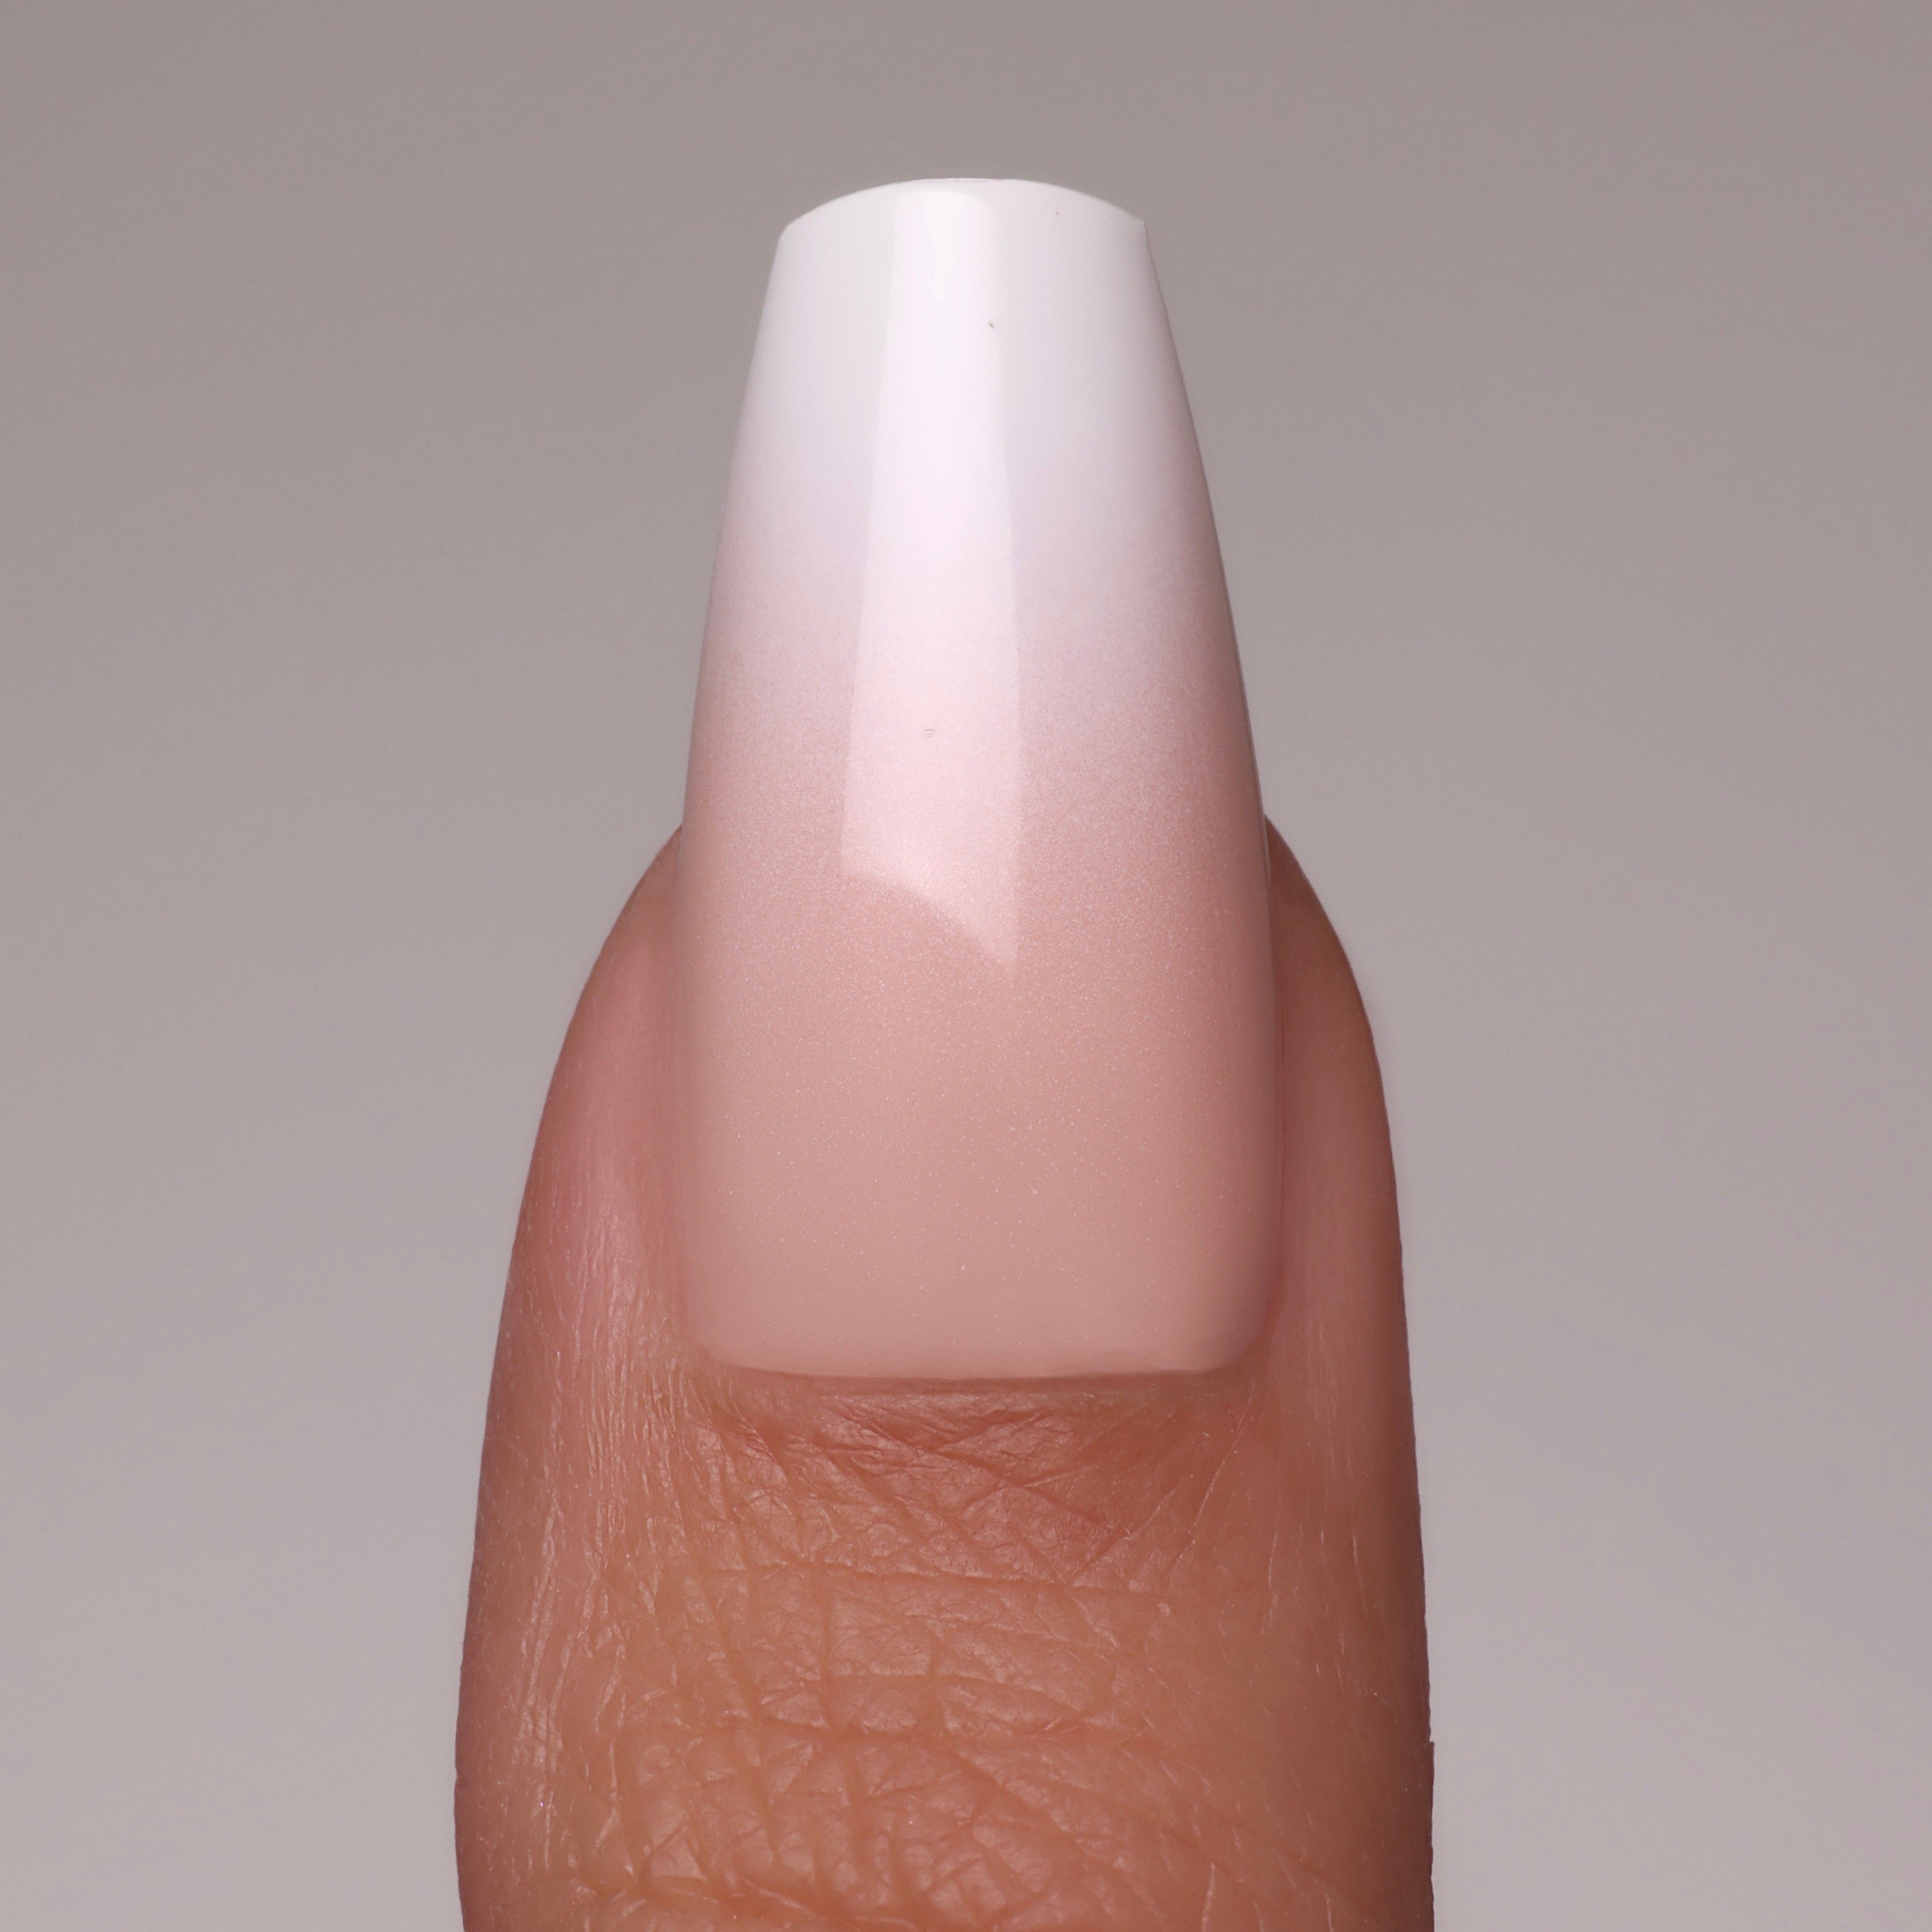 NAKED OMBRÉ Akrilik (ekstra uzun) Press On Nails